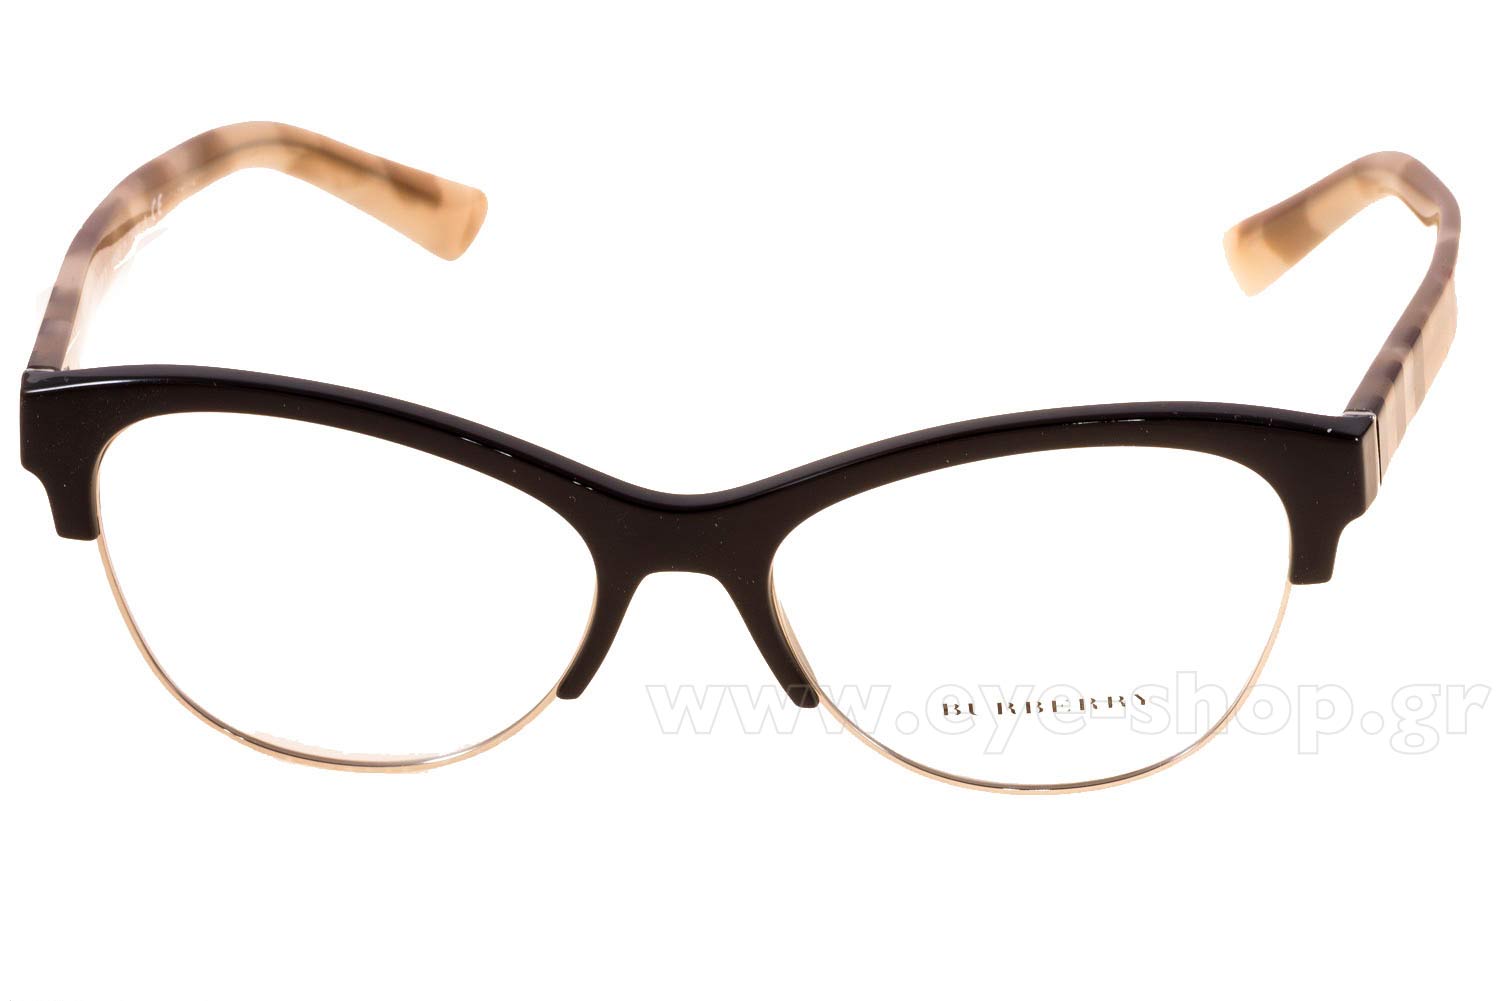 burberry glasses frames women